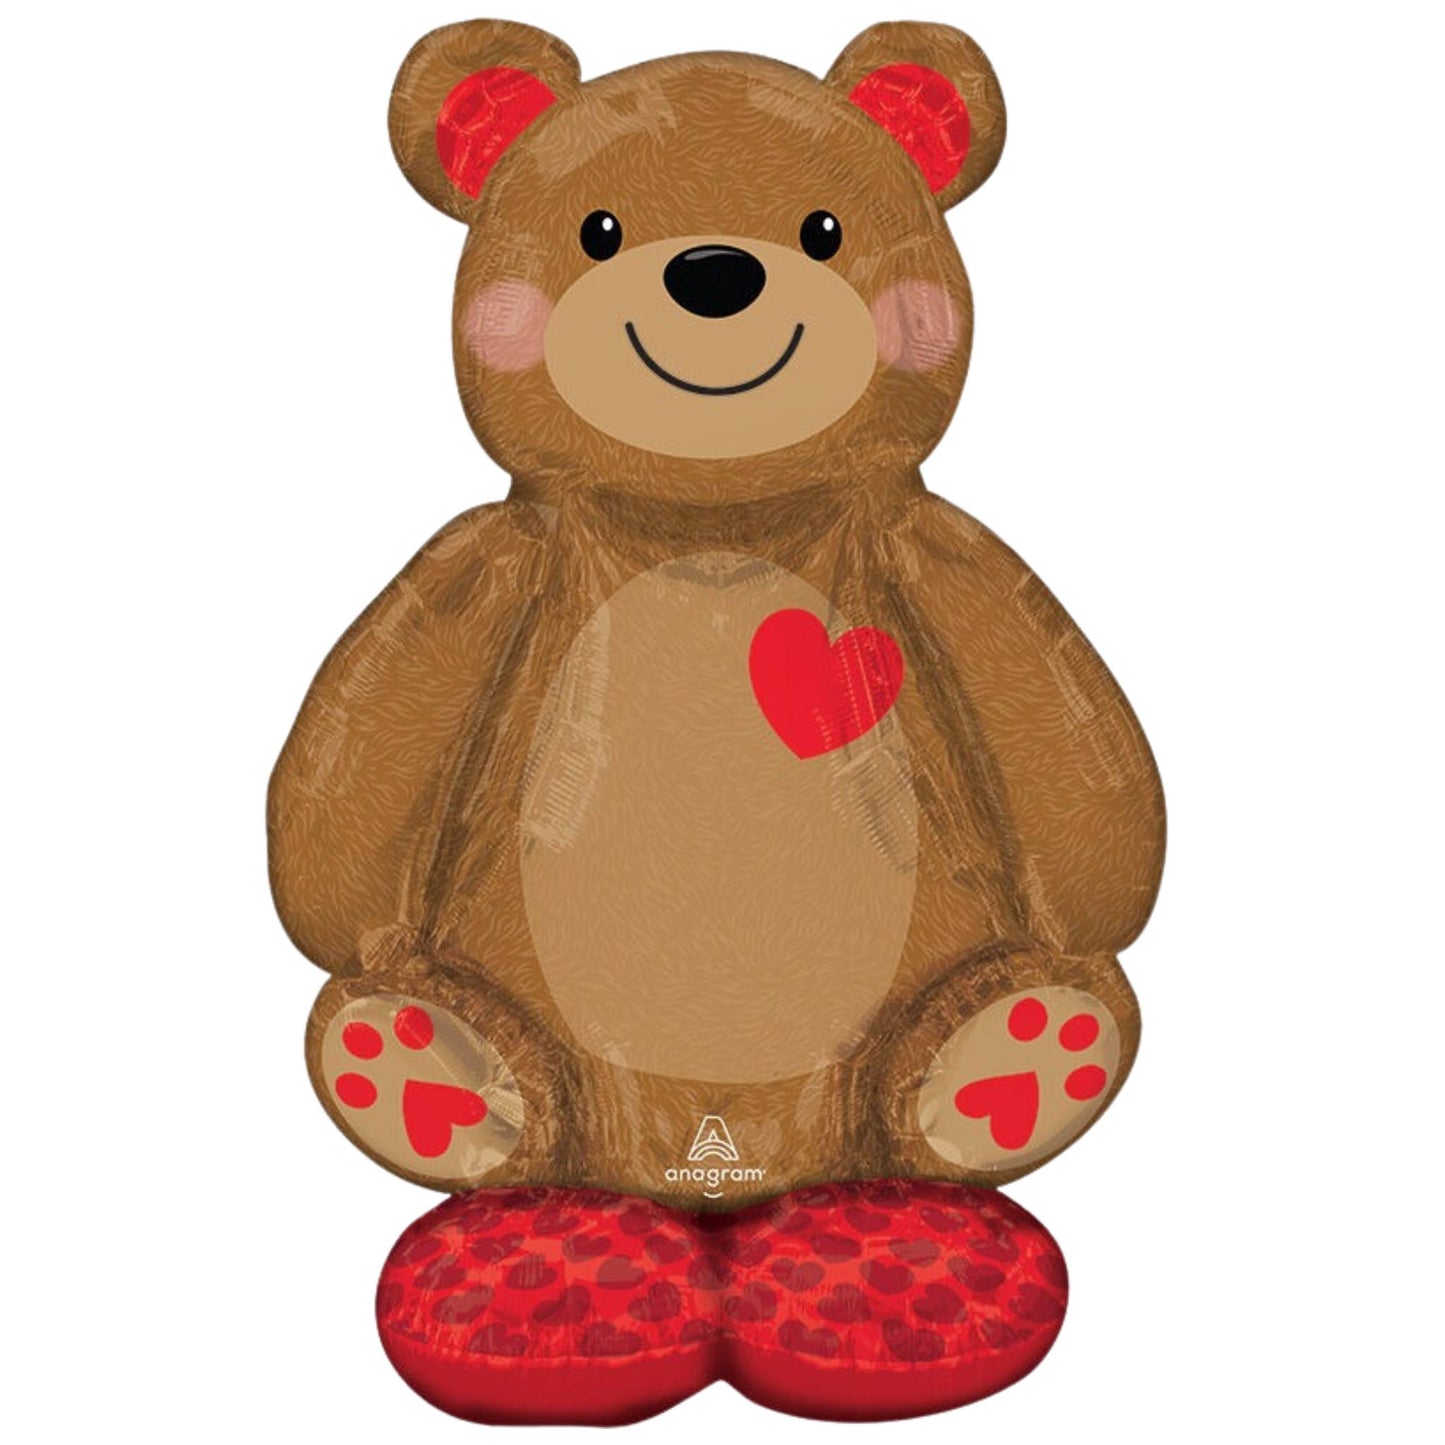 48" Big Cuddly Teddy AirLoonz